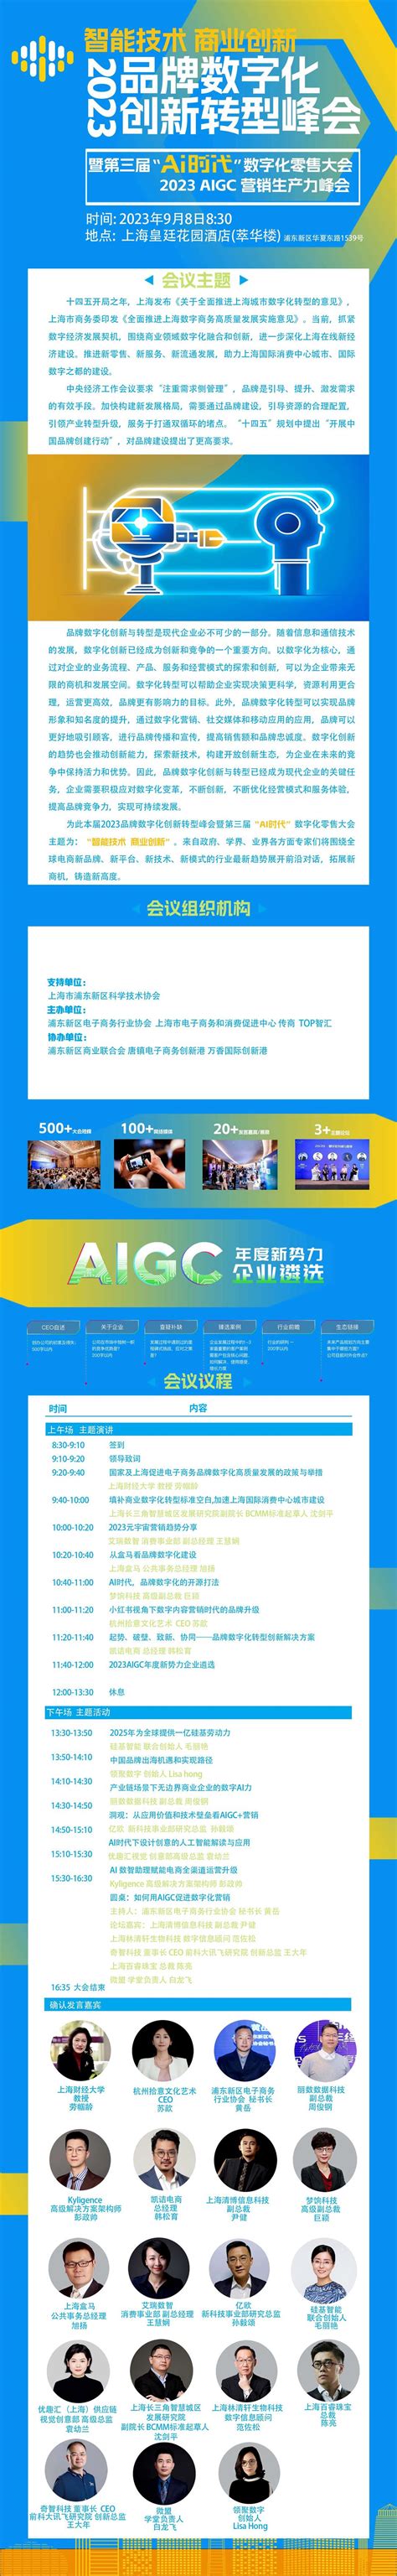 【附下载】从营销AIGC化到AIGC营销化分析报告 | 流媒体网